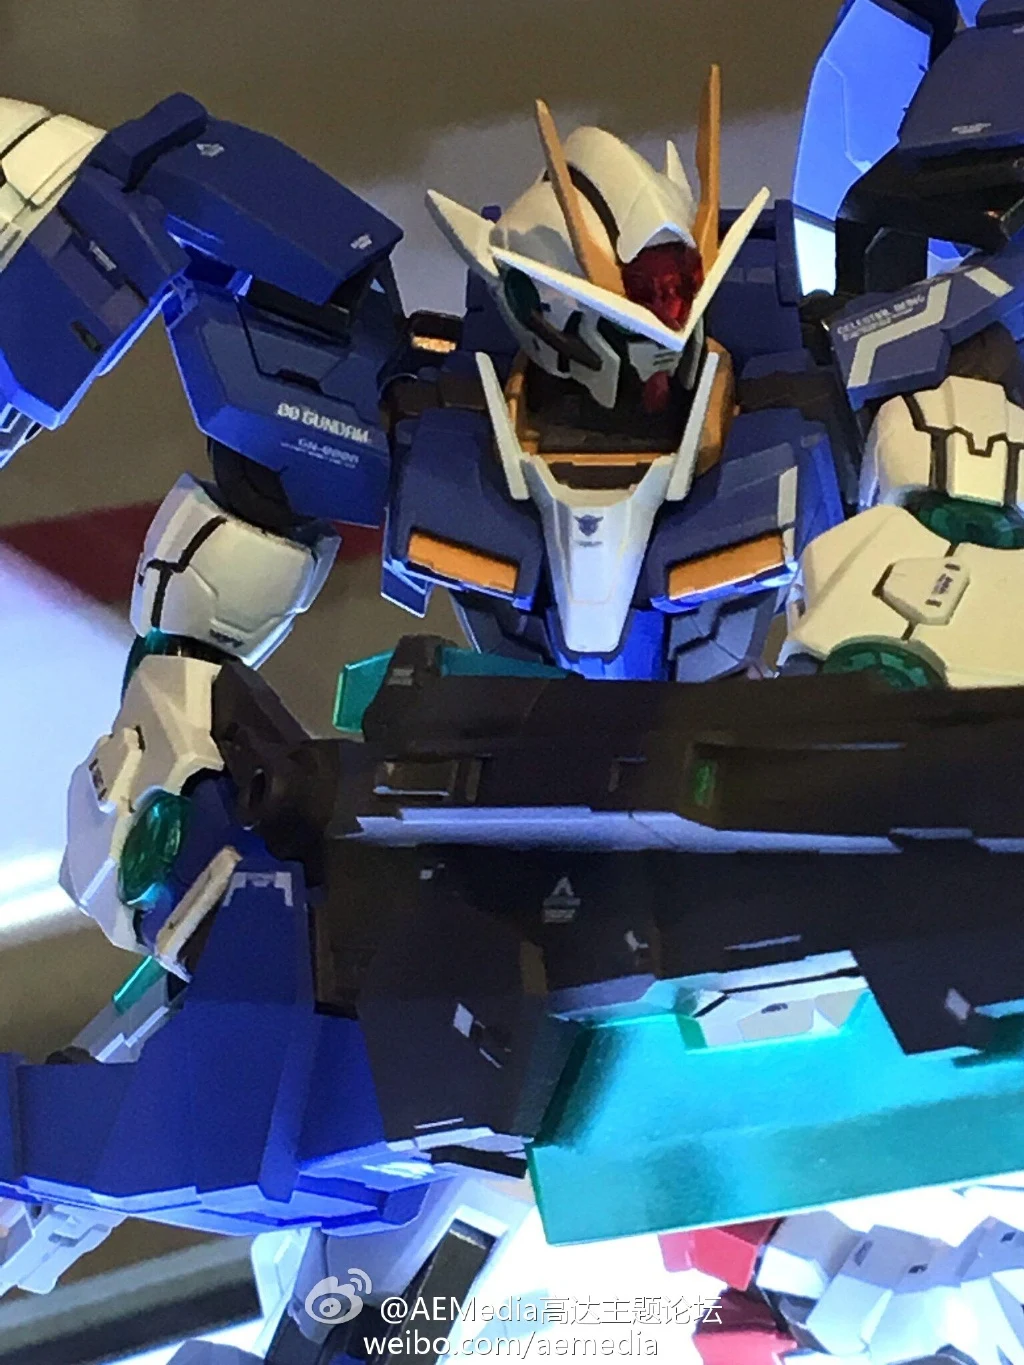 Metal Build 1/100 00 Gundam Seven Sword/G - Release Info